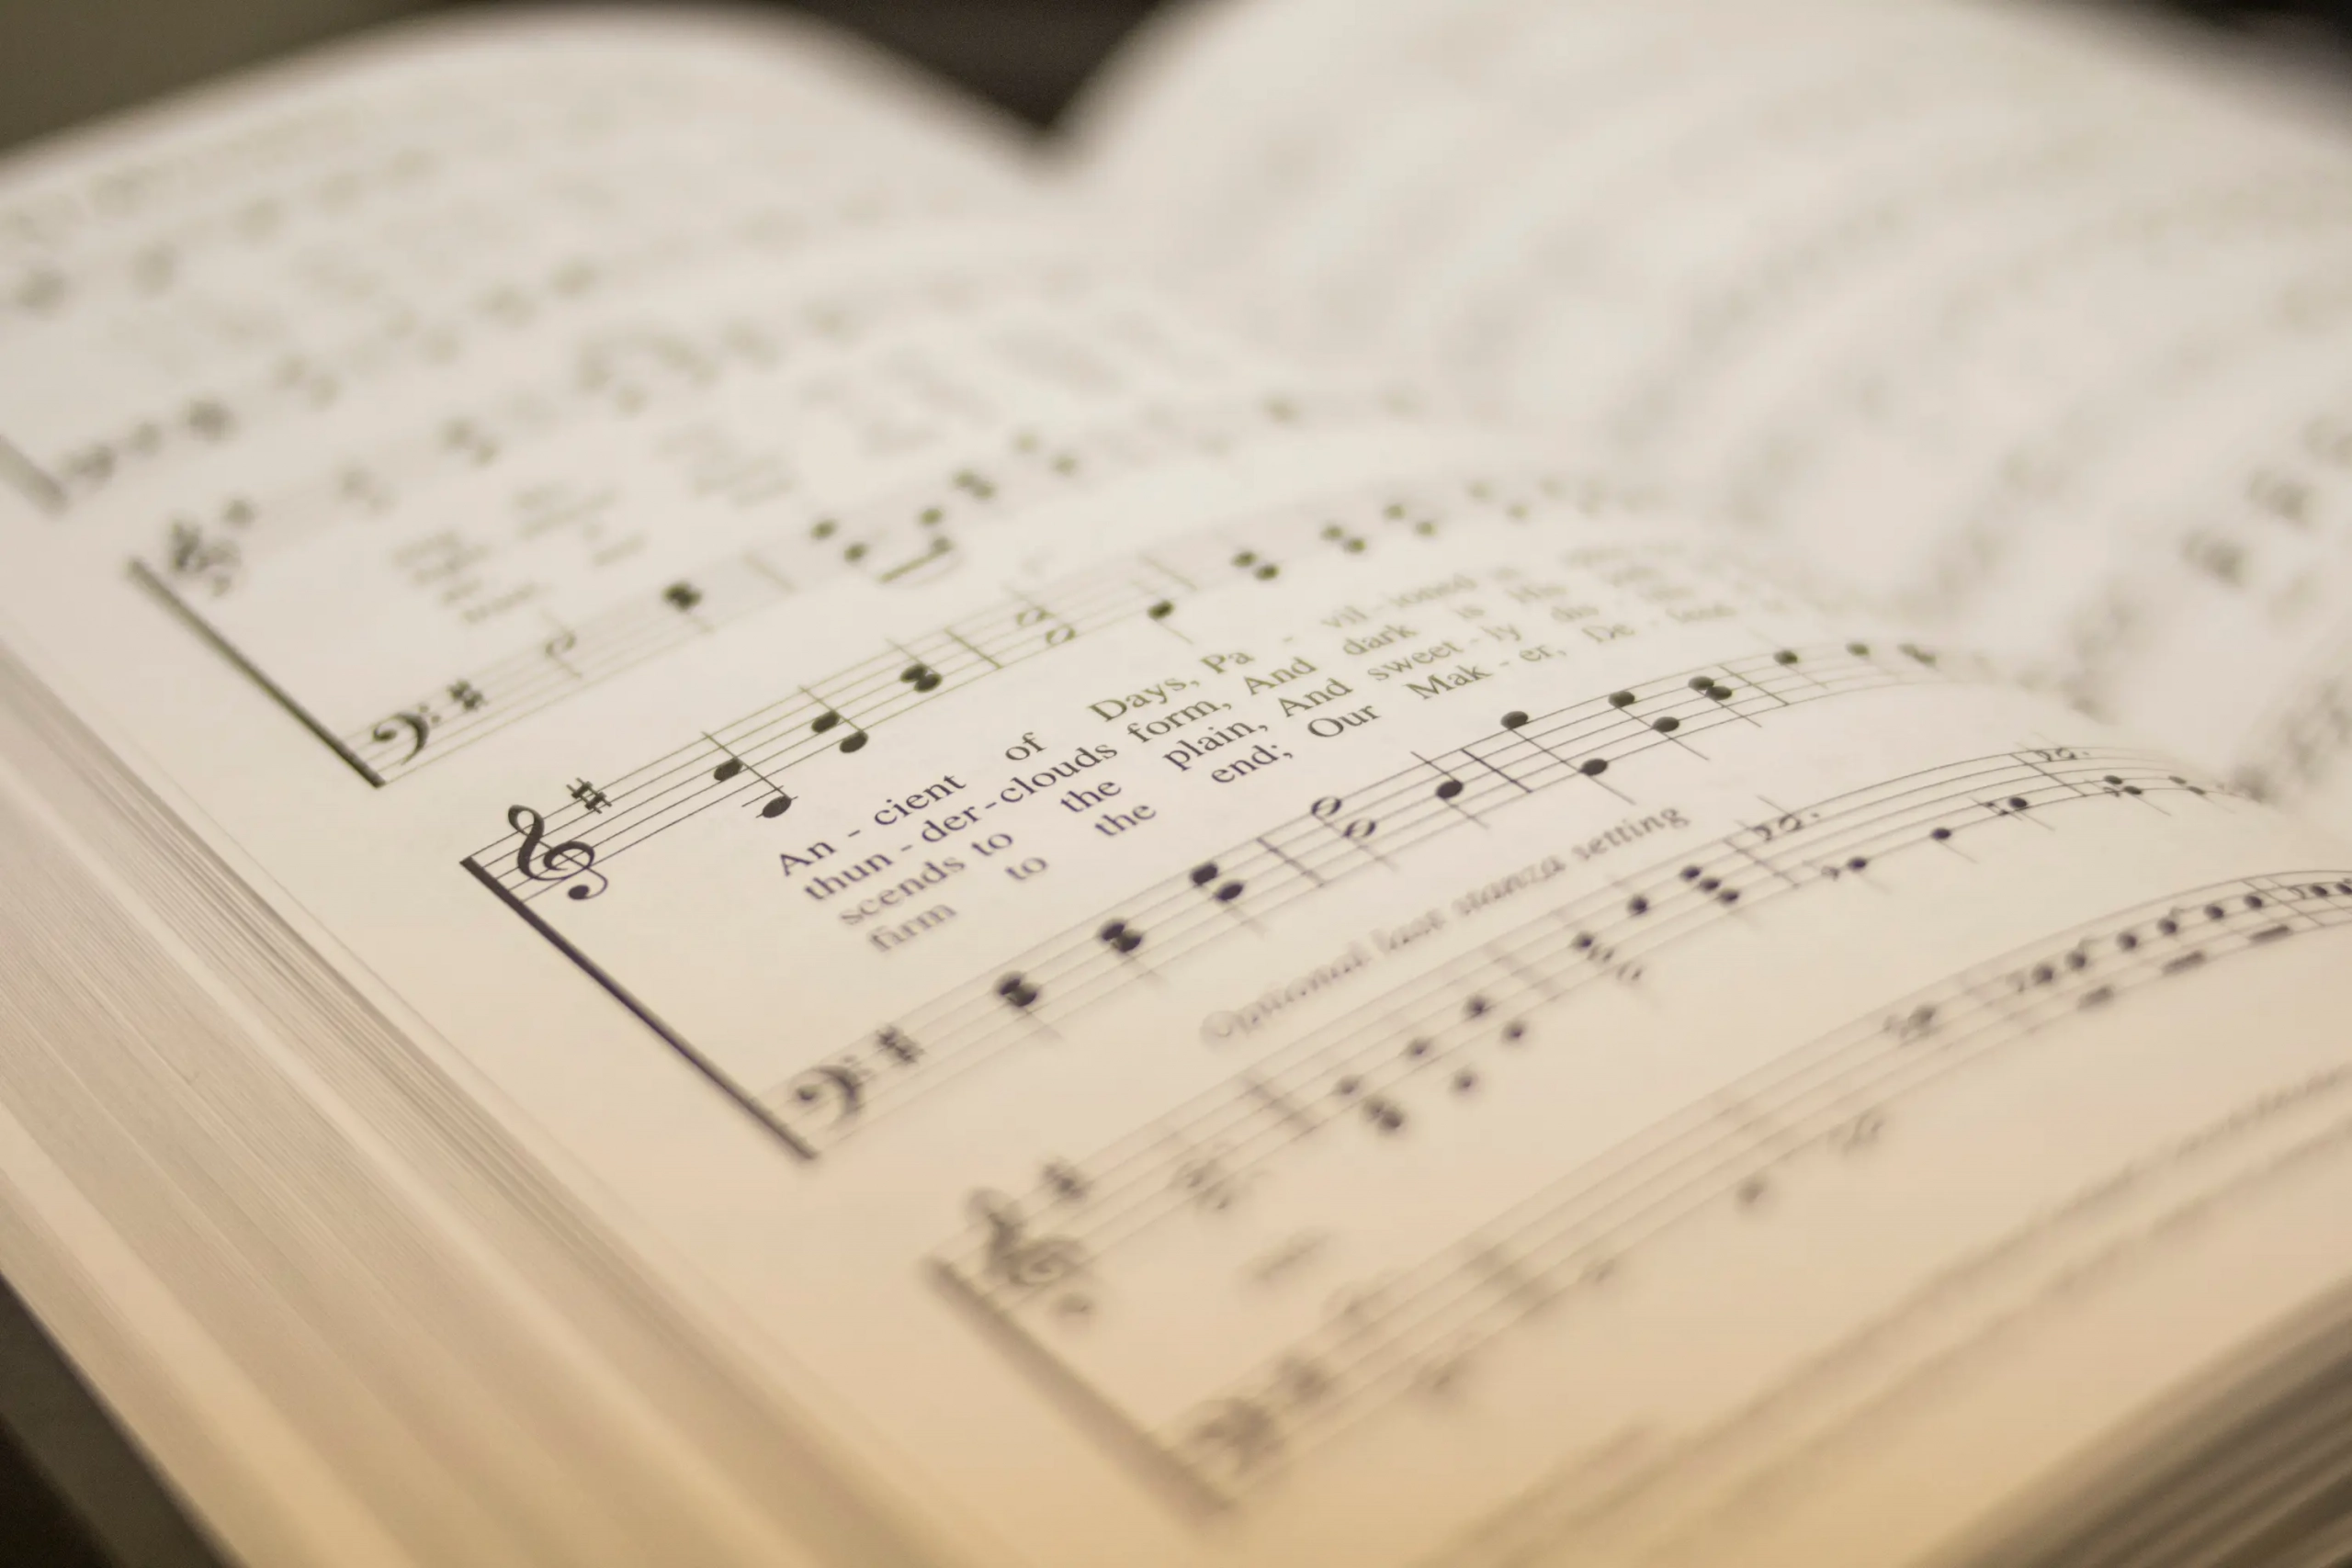 Gesangsbuch mit Schrift und Noten